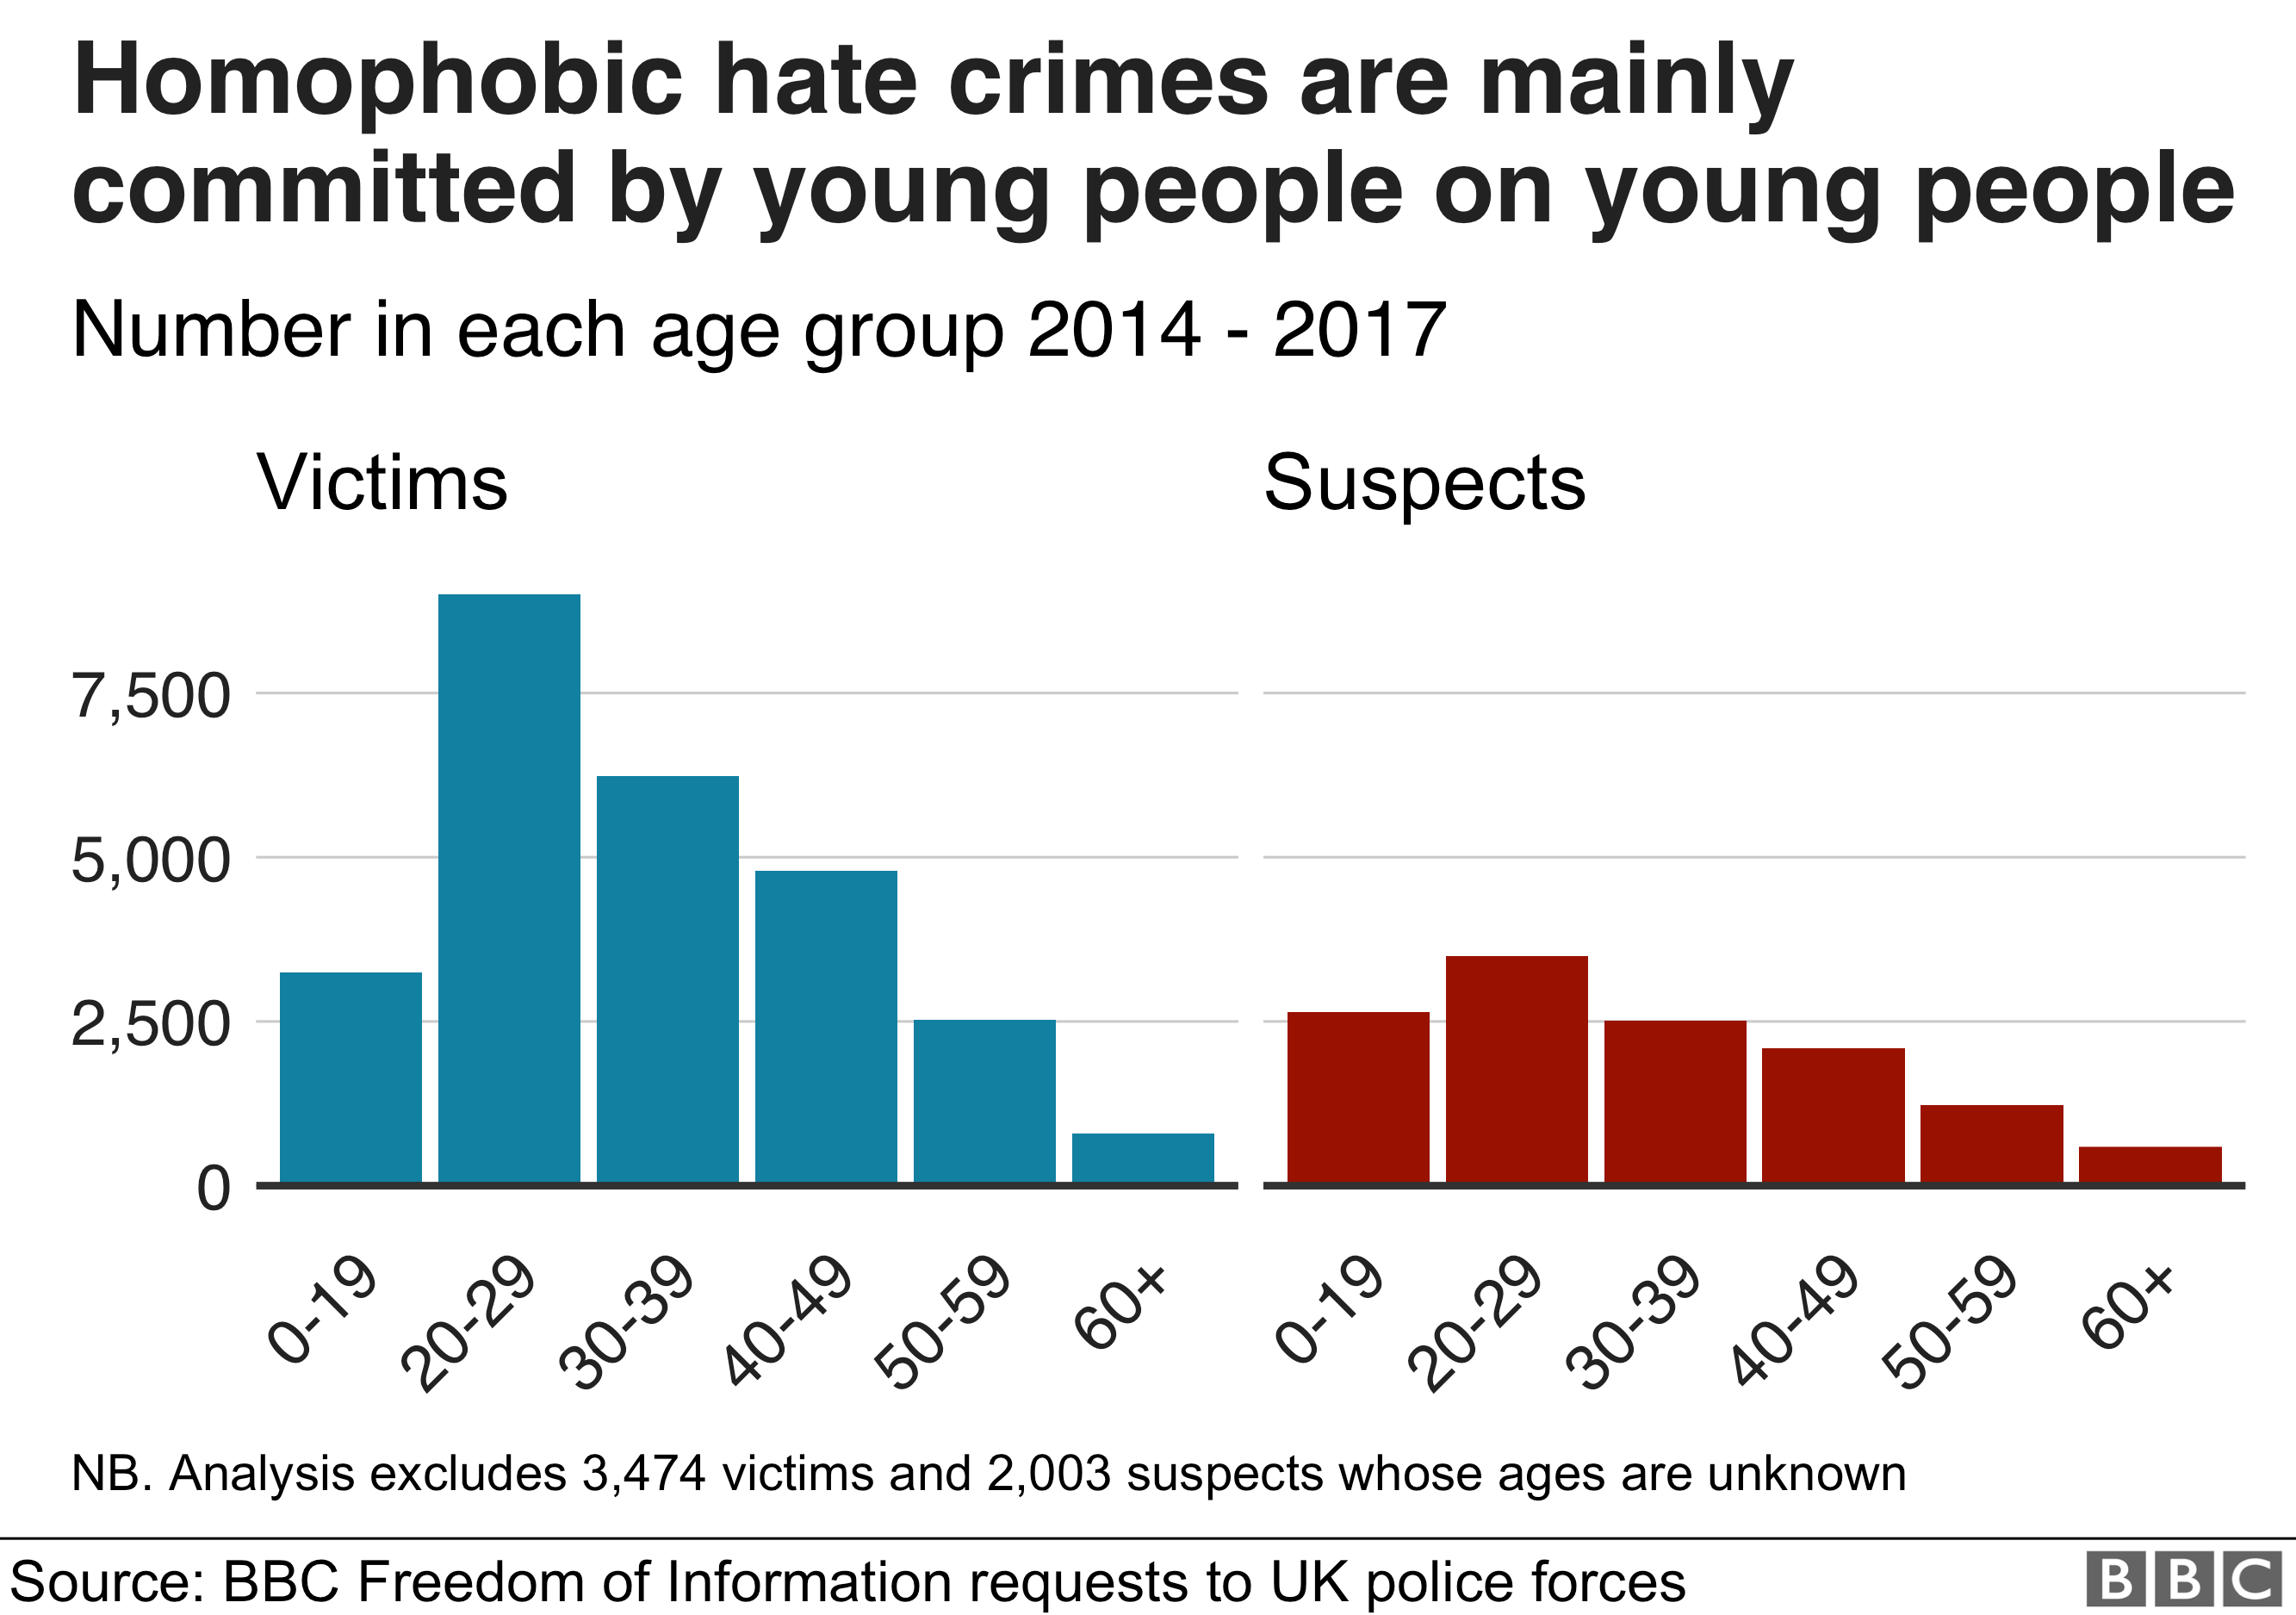 Гомофобные преступления на почве ненависти совершаются в основном молодыми людьми против молодежи